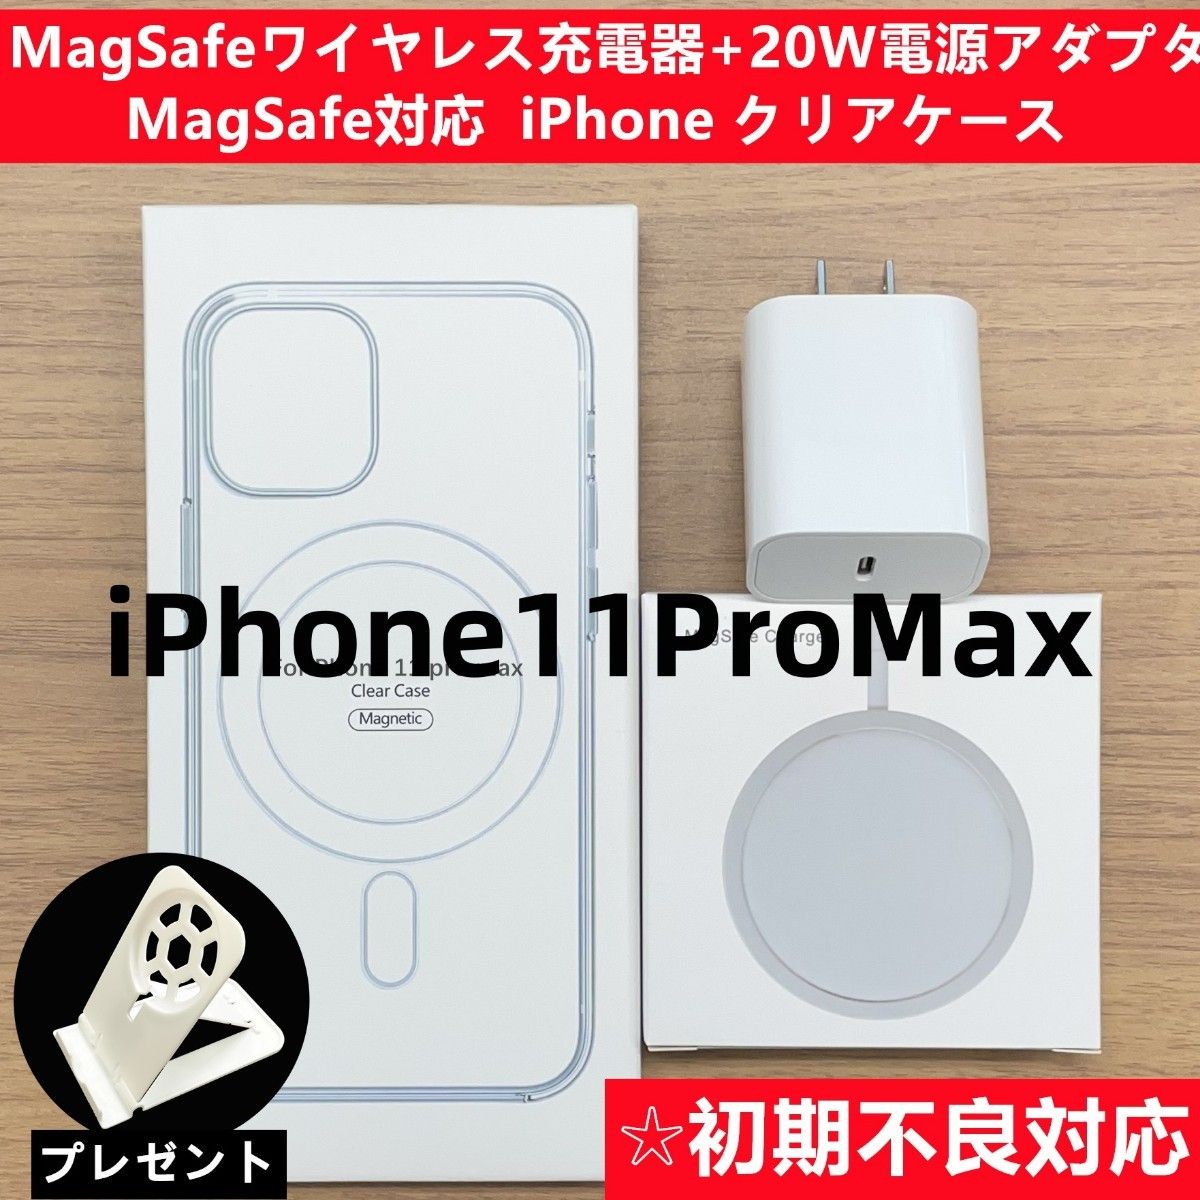 Magsafe充電器+電源アダプタ+ iPhone11promaxクリアケースh